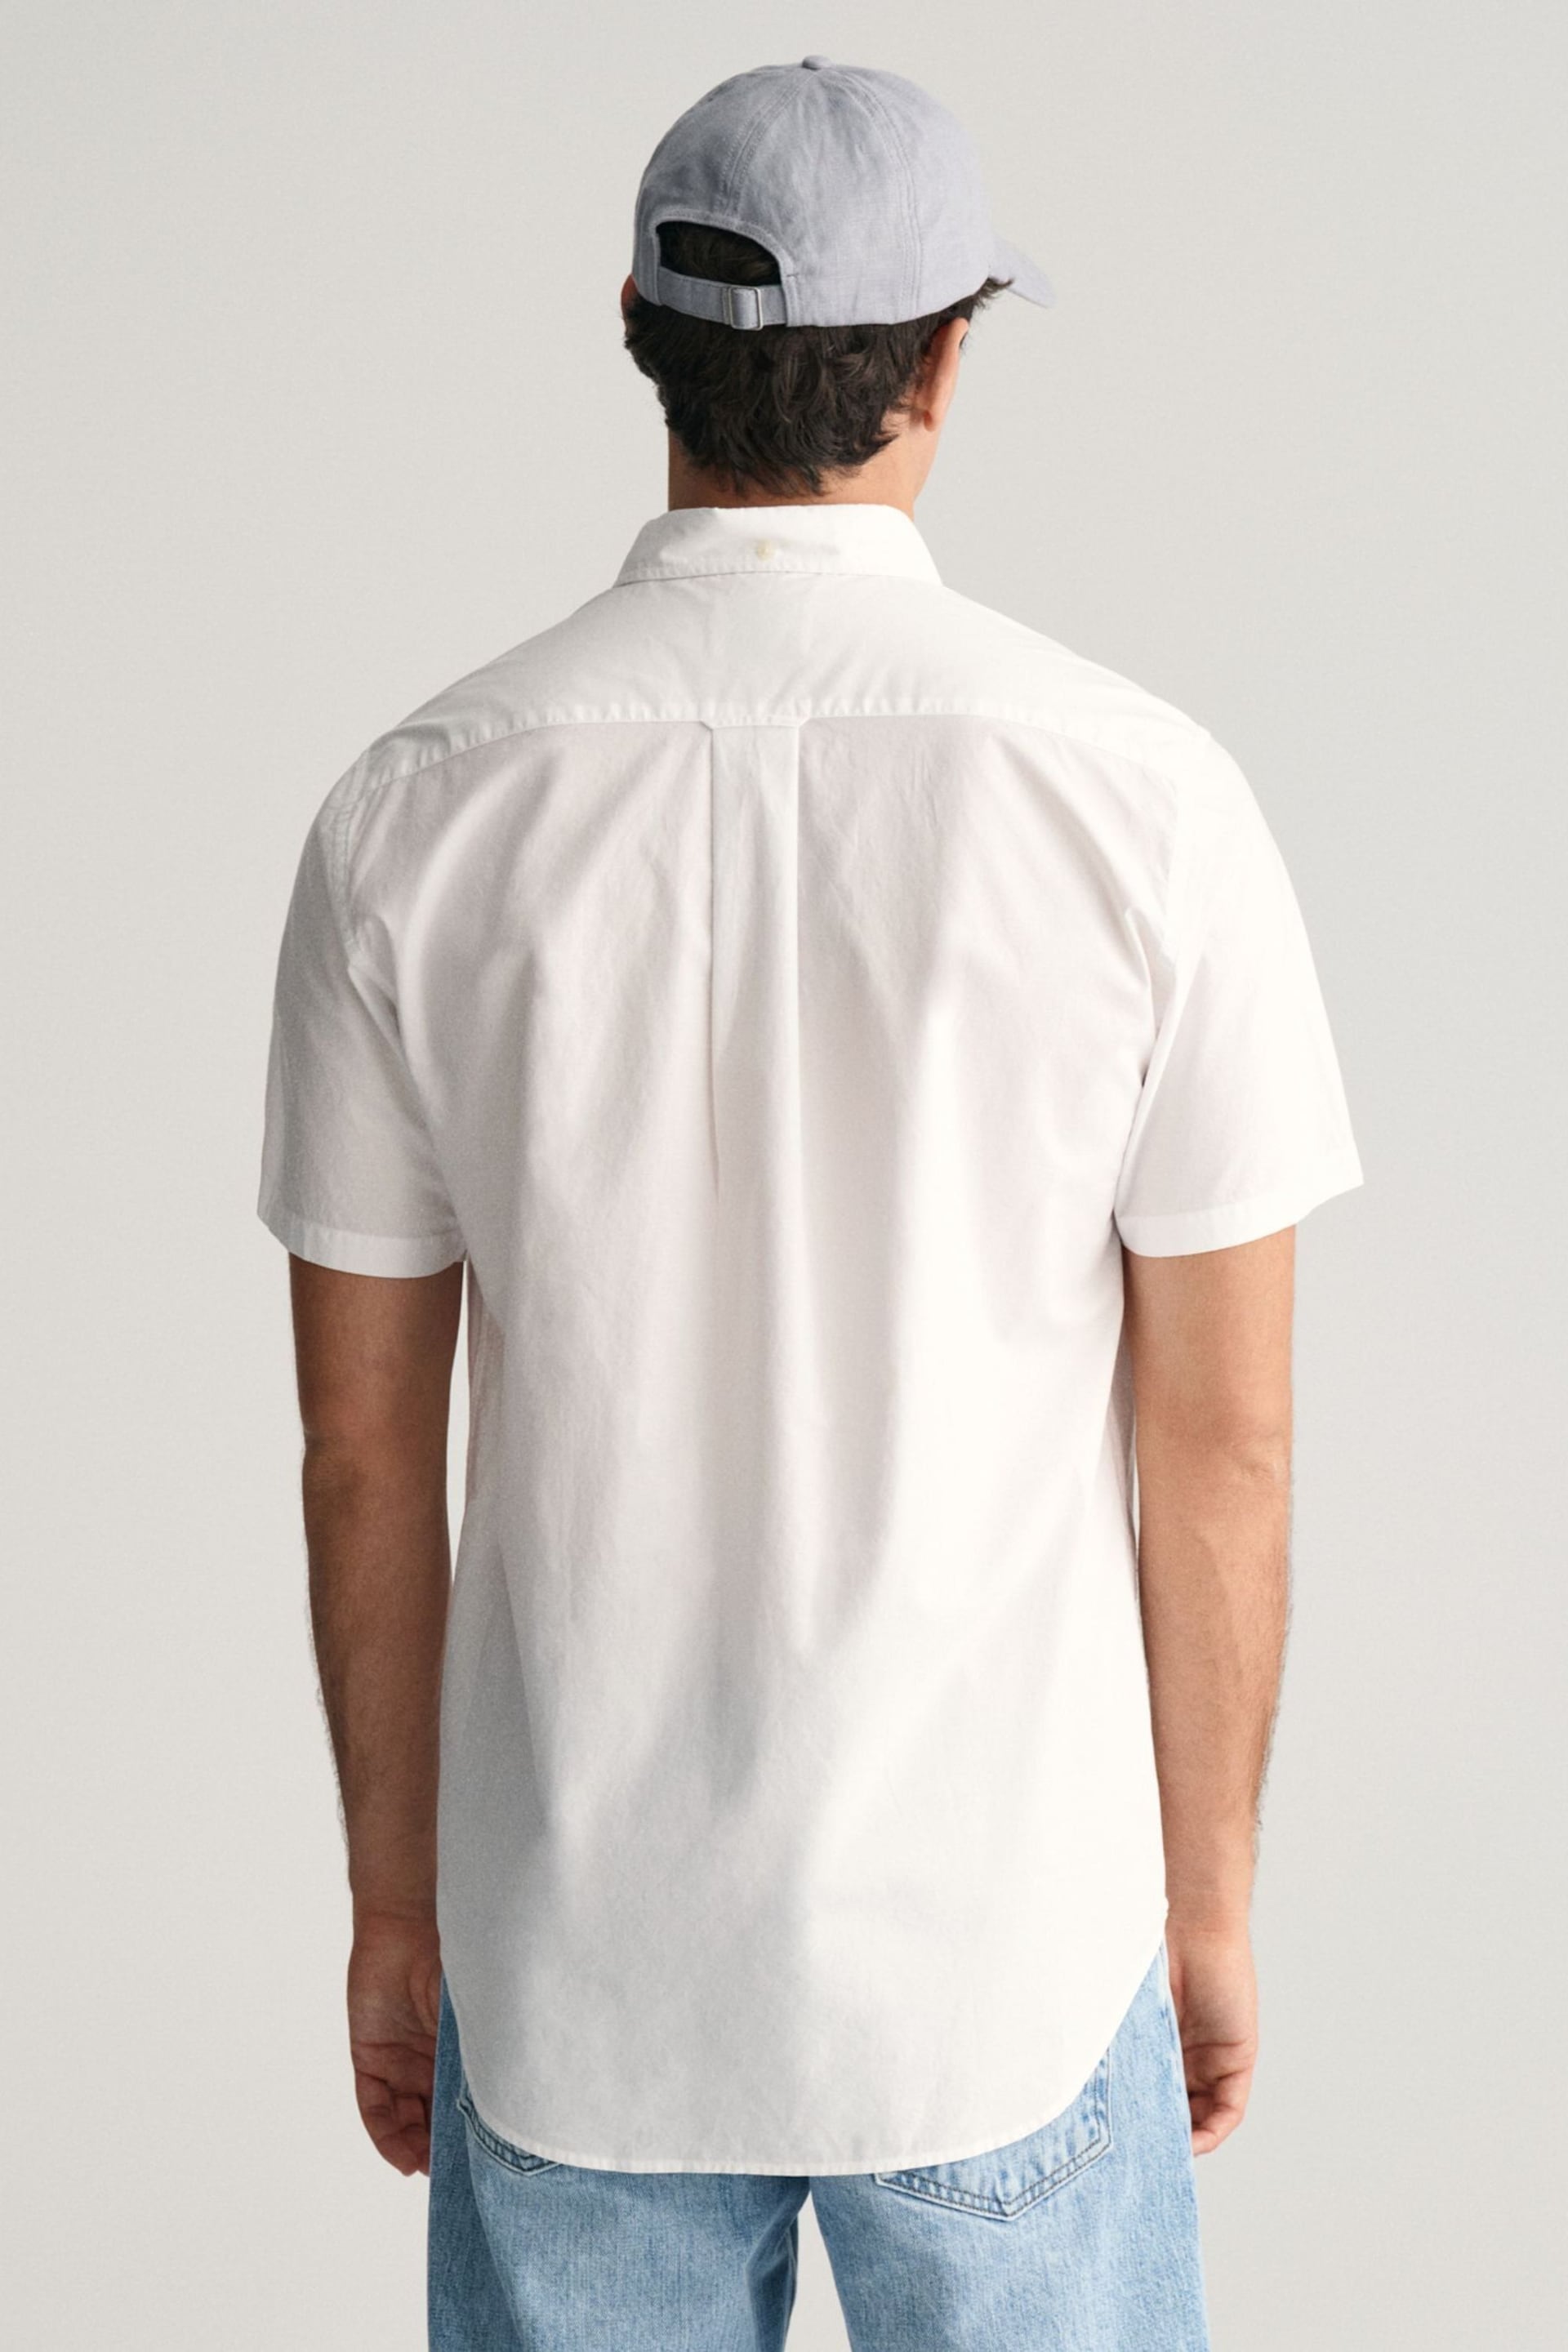 GANT White Regular Fit Poplin Short Sleeve Shirt - Image 2 of 6